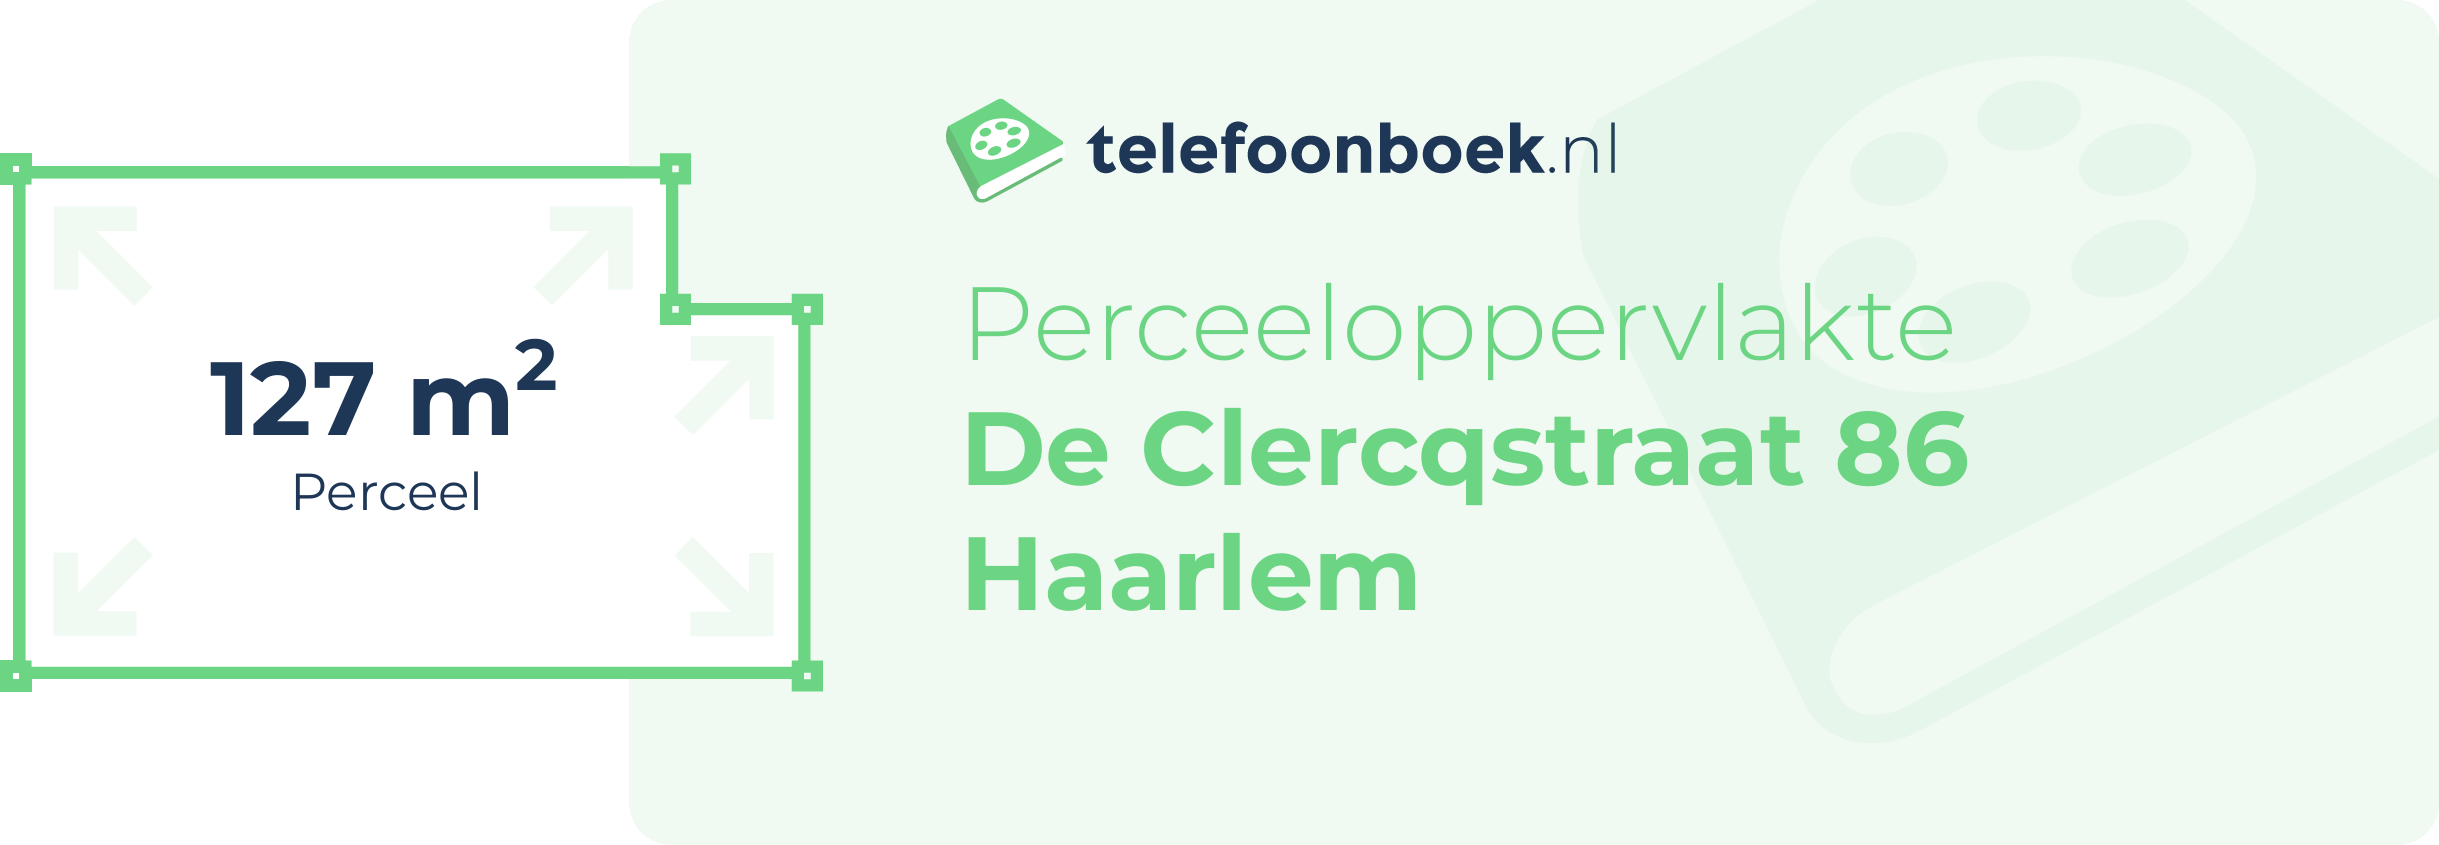 Perceeloppervlakte De Clercqstraat 86 Haarlem